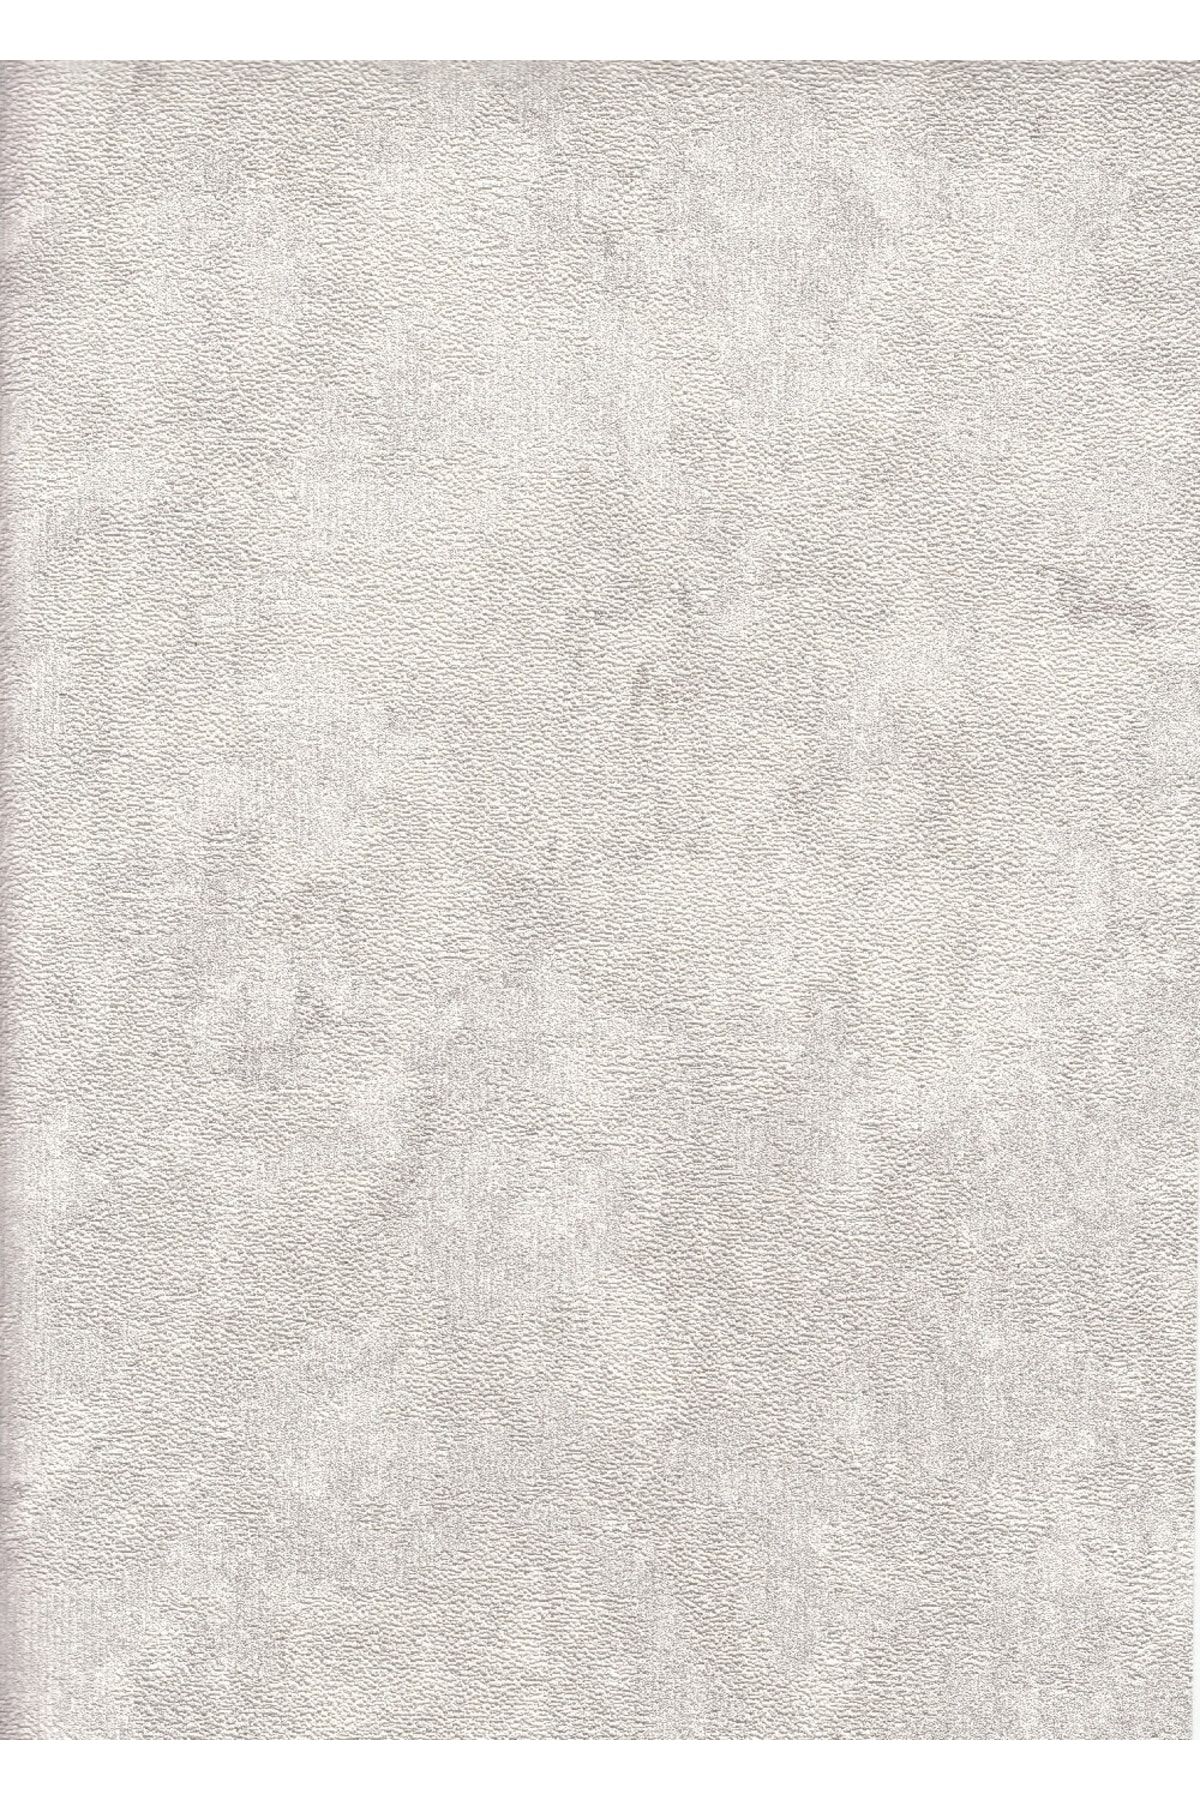 vertu 4007-3 -safir Beyaz Renkli Duvar Kağıdı